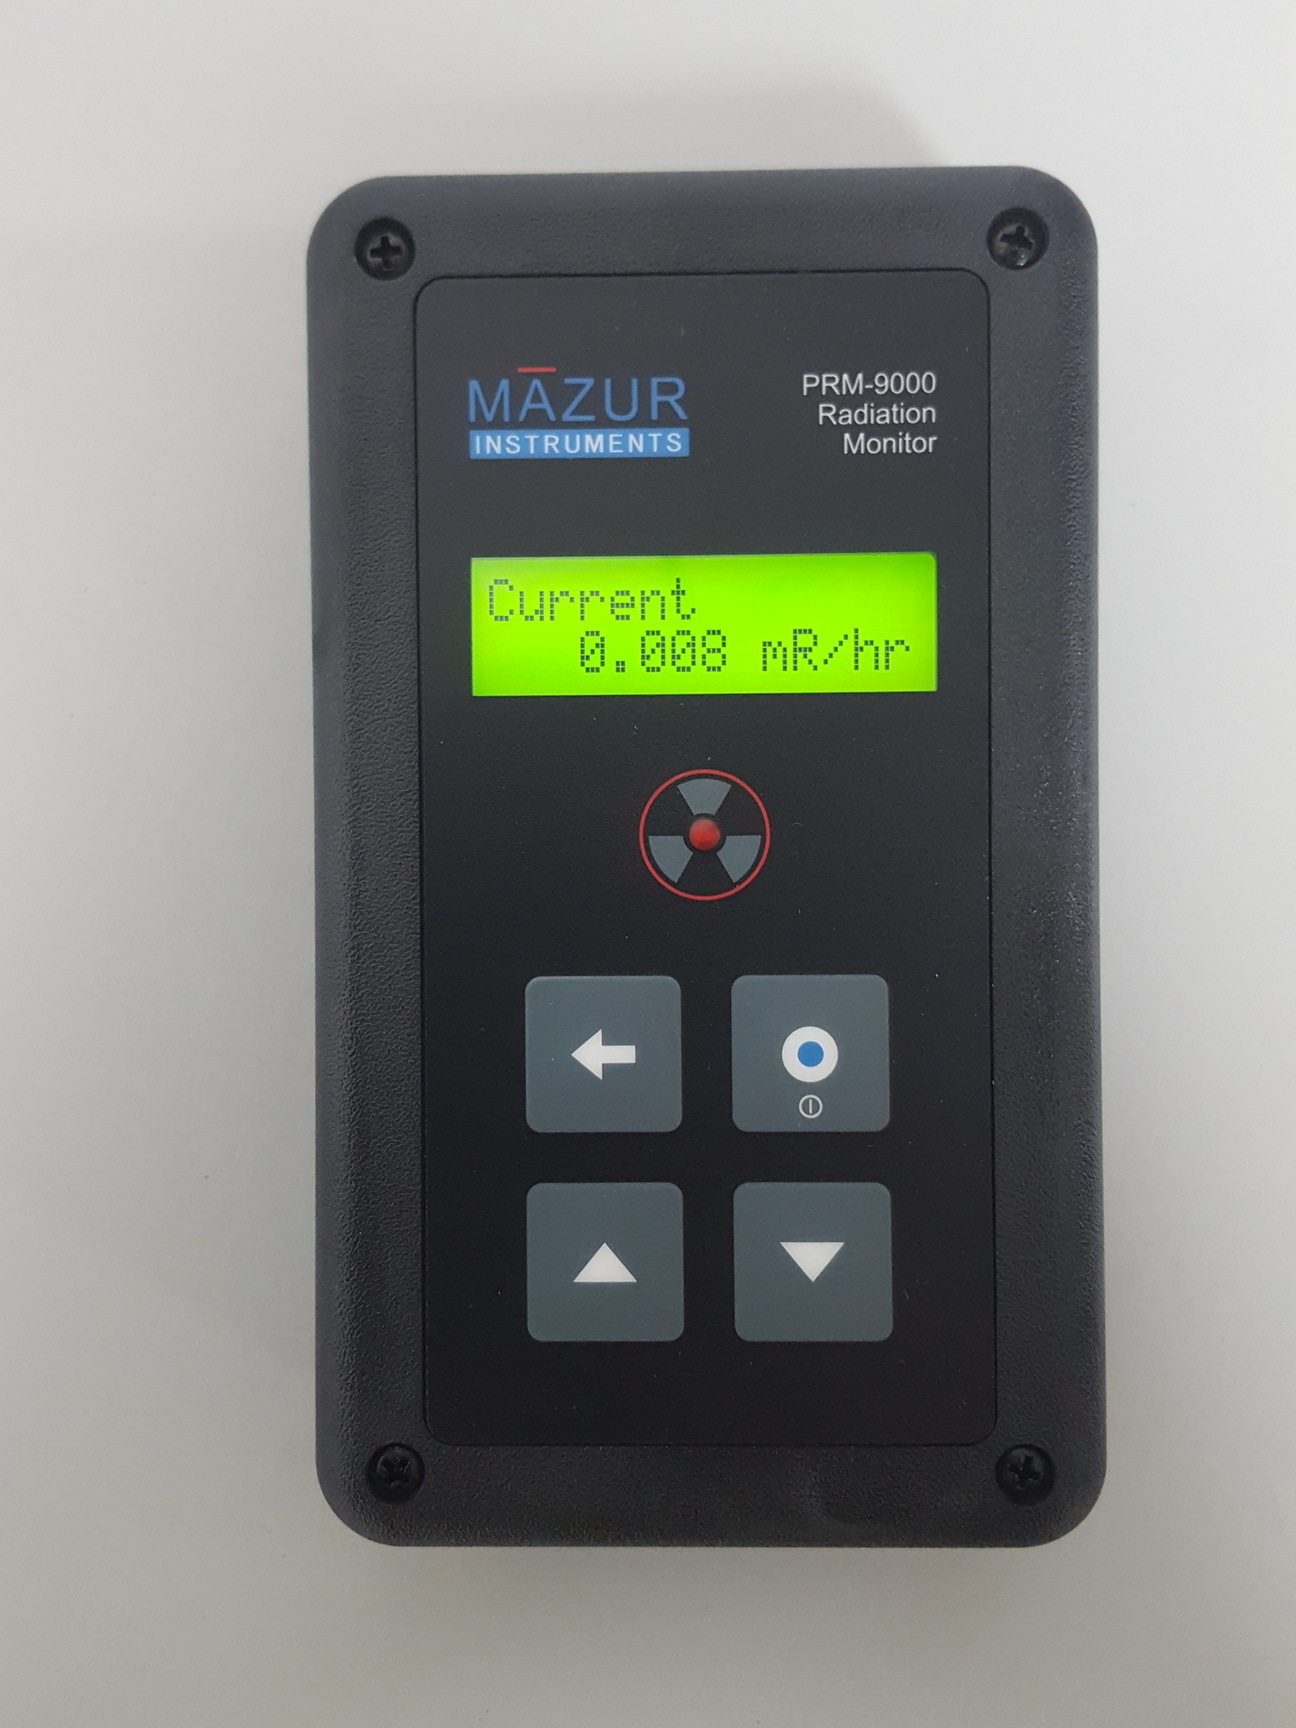 核辐射检测仪PRM-9000 美国MAZUR 应用： 该仪器适用于监管检查，以及检测、测量和监测广谱、低能放射性核素，包括天然存在的放射性物质 (NORM)。PRM-9000 